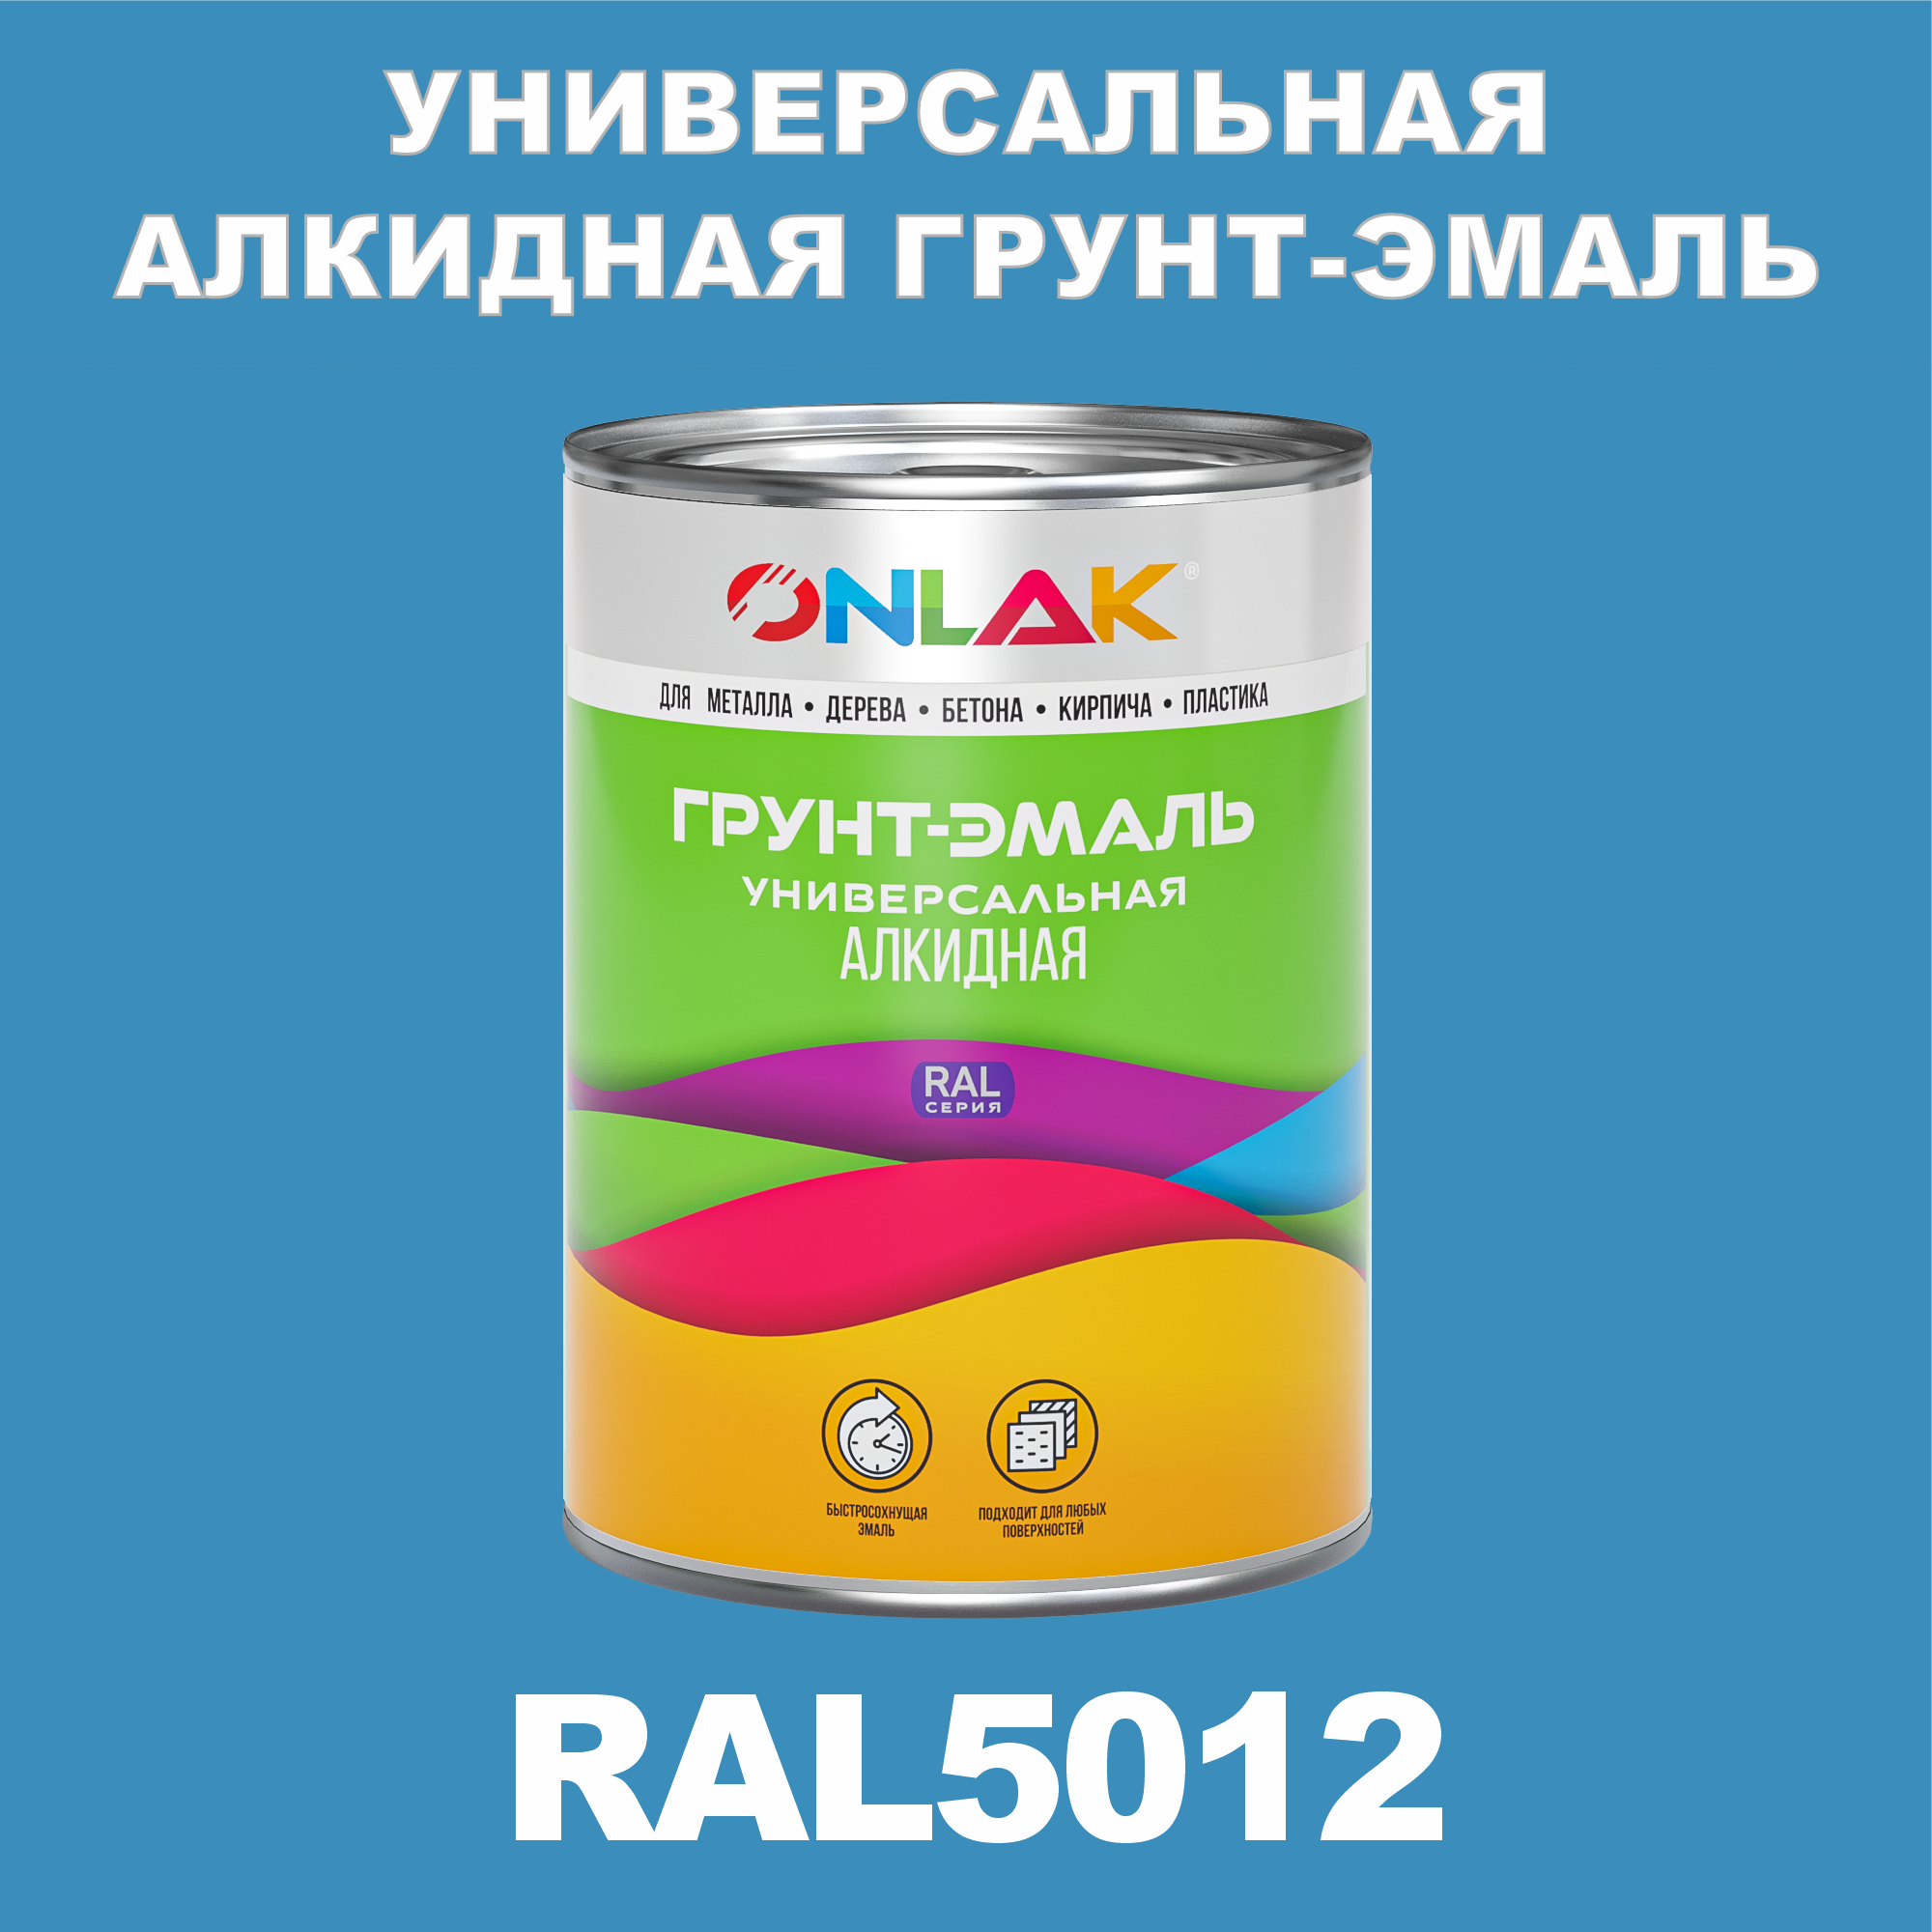 Грунт-эмаль ONLAK 1К RAL5012 антикоррозионная алкидная по металлу по ржавчине 1 кг грунт эмаль рас по ржавчине алкидная синяя 0 9 кг